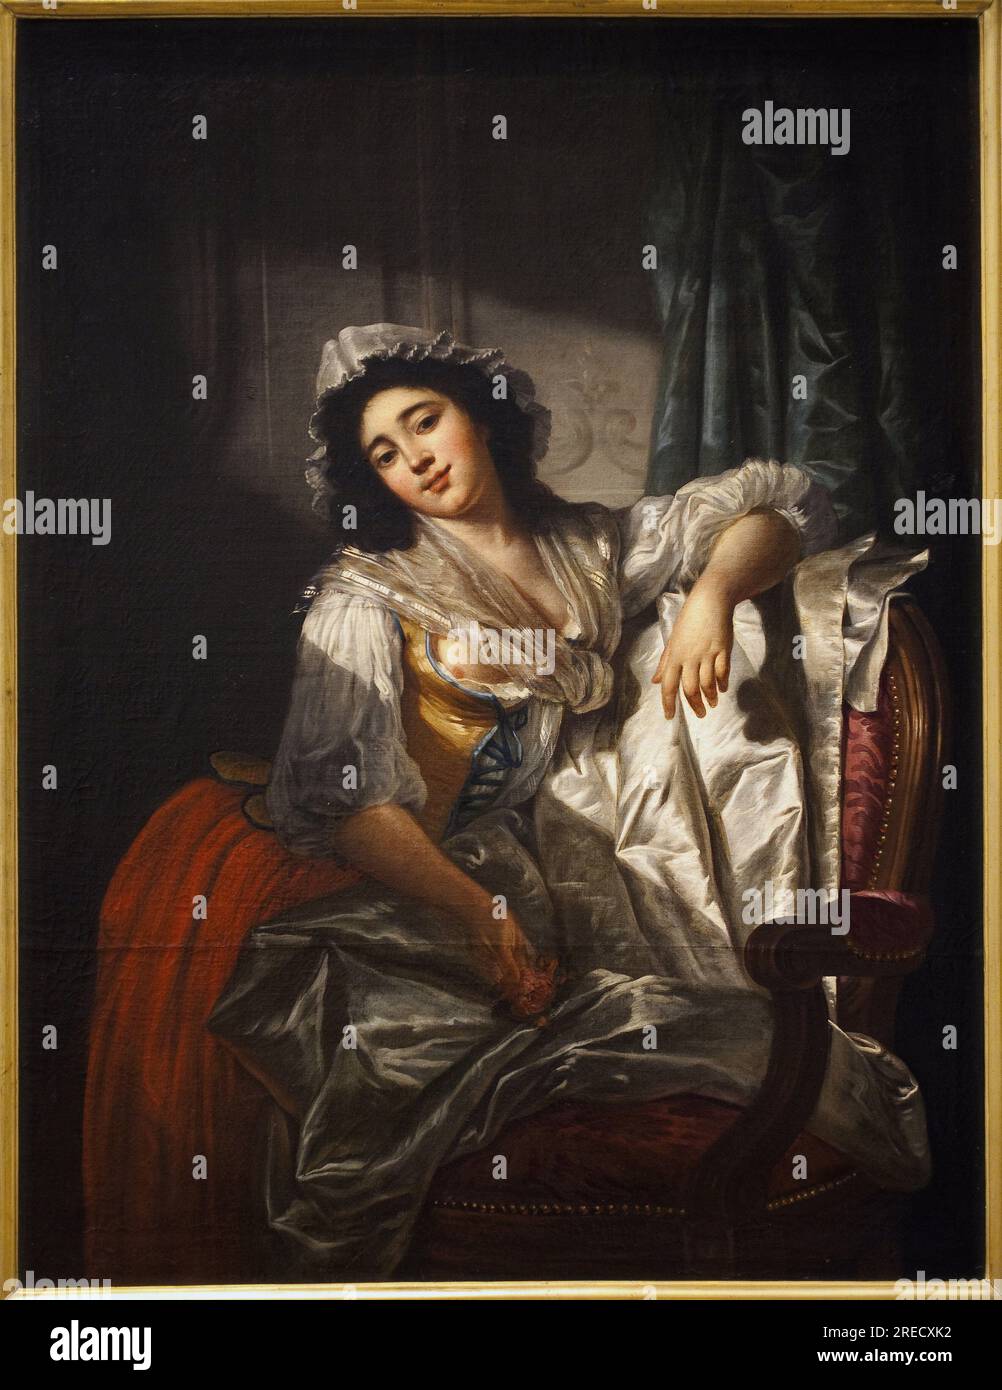 Portrait de Madame Sermet ou la rose et le bouton. Peinture de Joseph Roques (1754-1847), huile sur toile vers 1788. Art francais, 18e siecle. Musee des Beaux Arts de Toulouse. Stock Photo